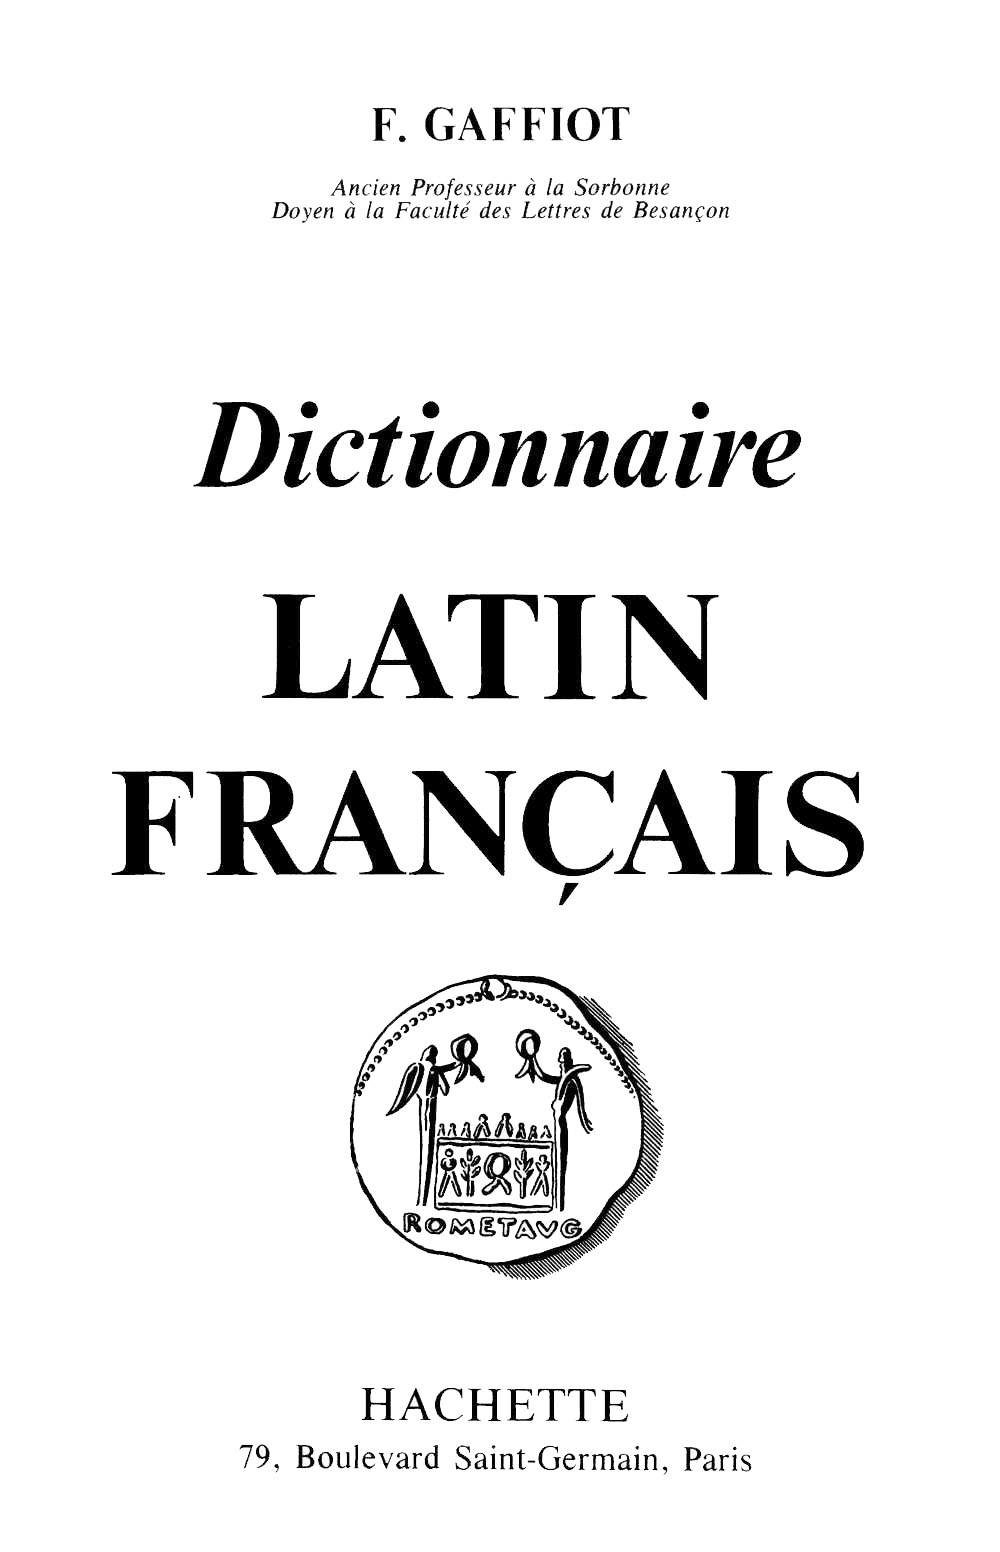 Traduction français en latin reverso